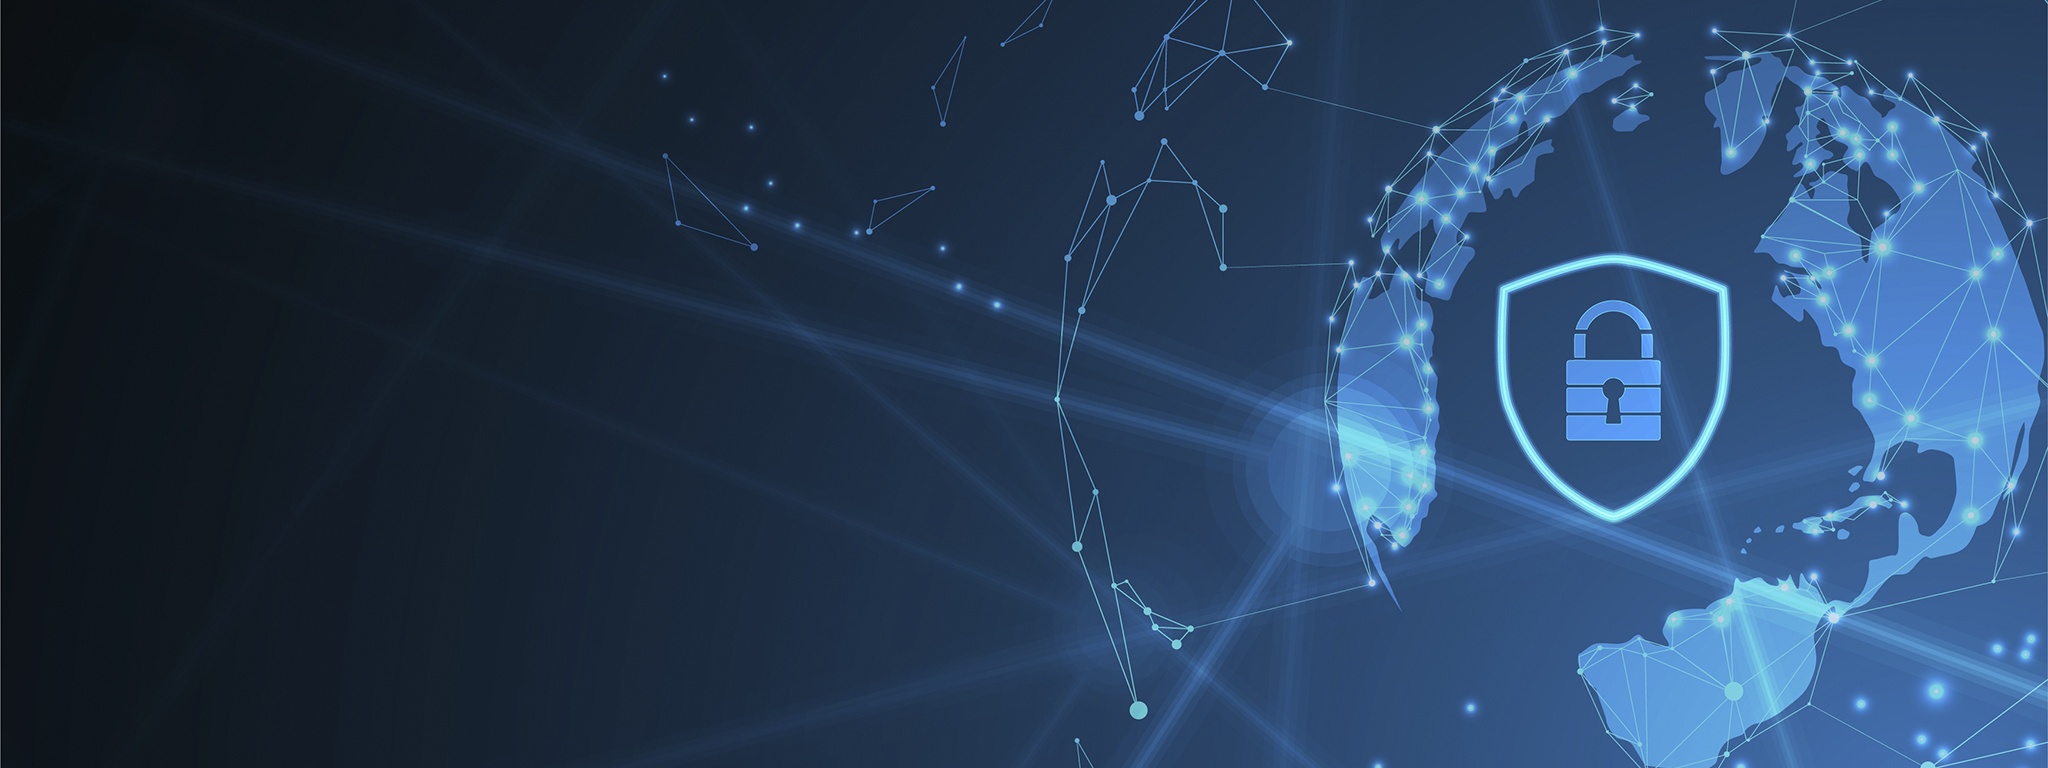 자물쇠와 방패가 있는 지구본의 인터넷 디지털 회선의 파란색 그림